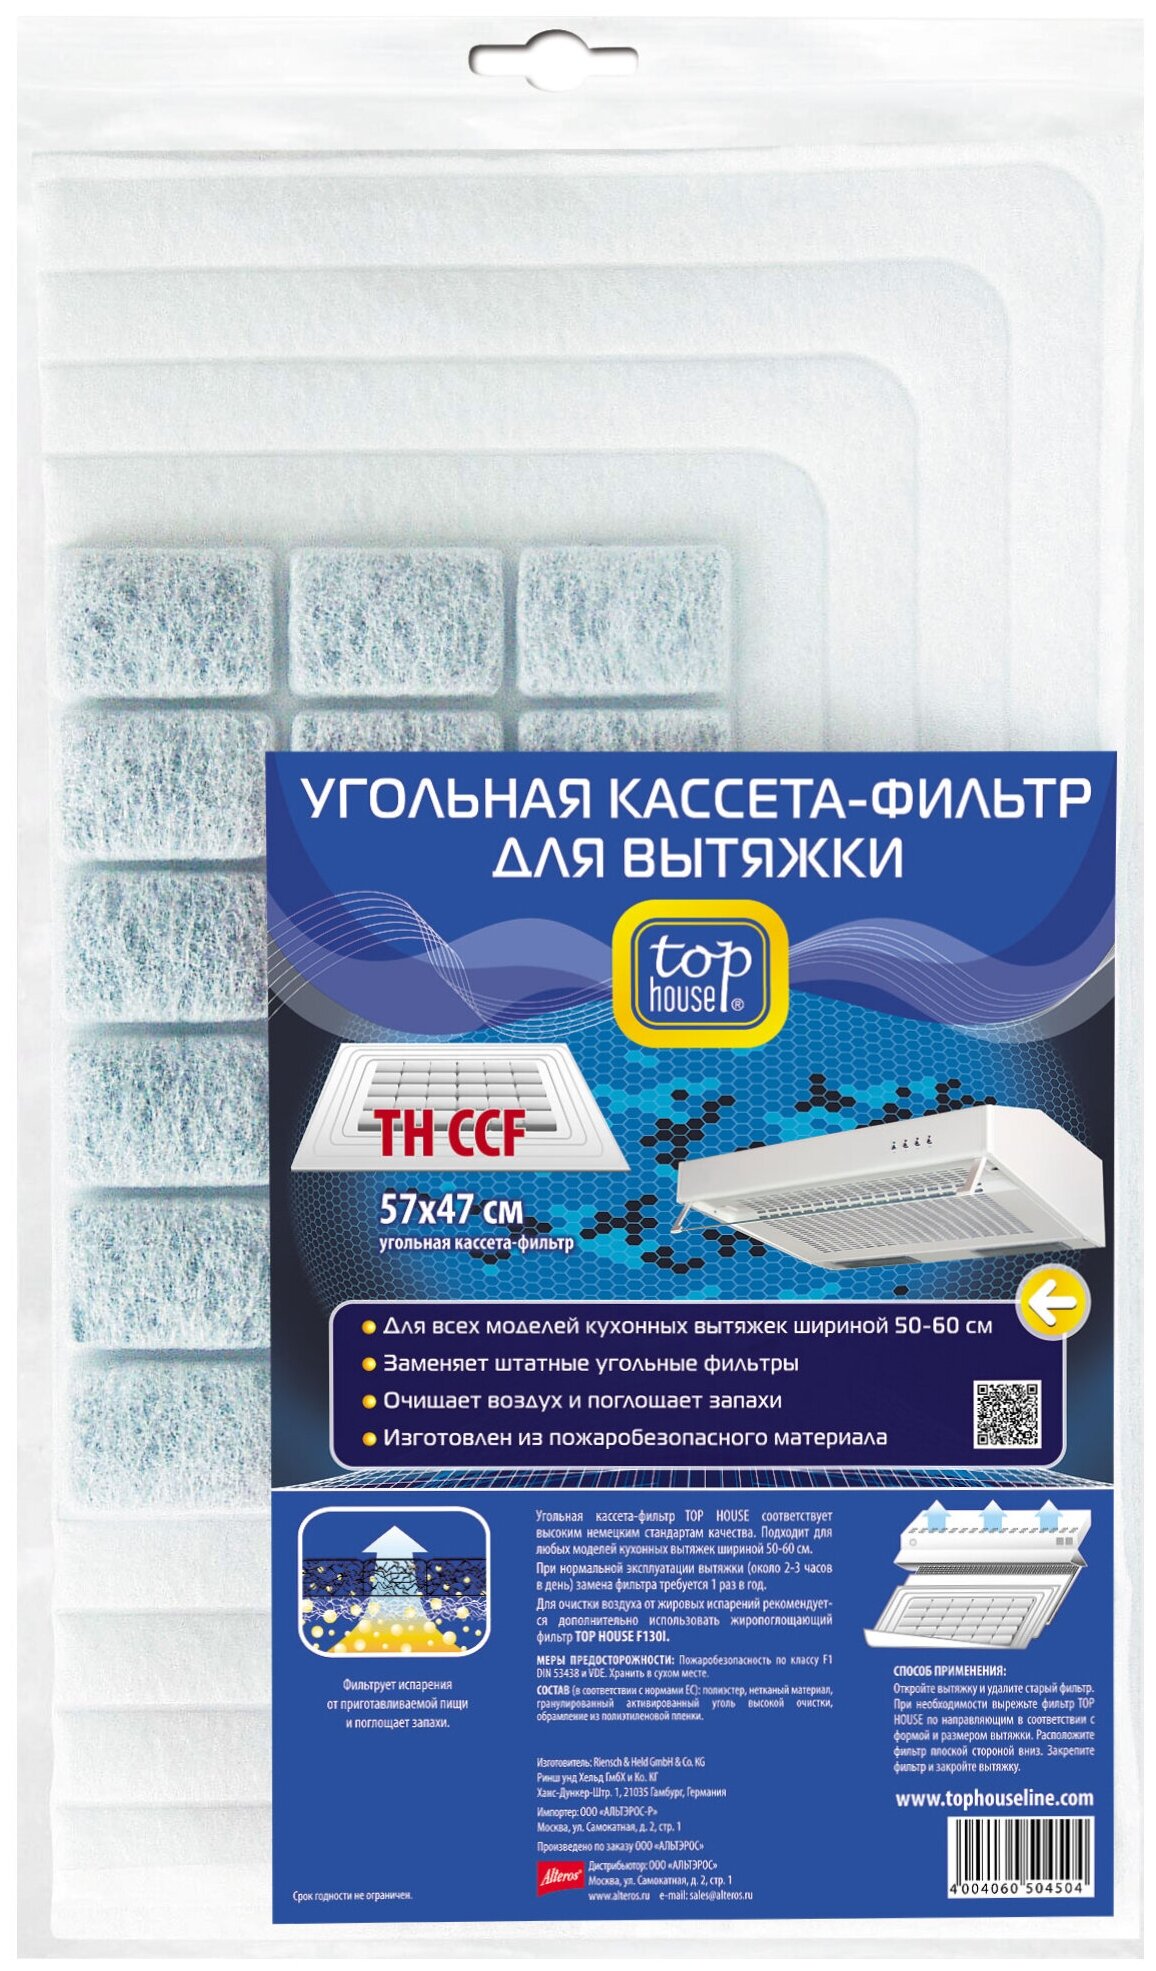 TOP HOUSE TH CCF "угольная кассета 400 г" фильтр для вытяжки, 57 х 47 см / 25 х 35 см